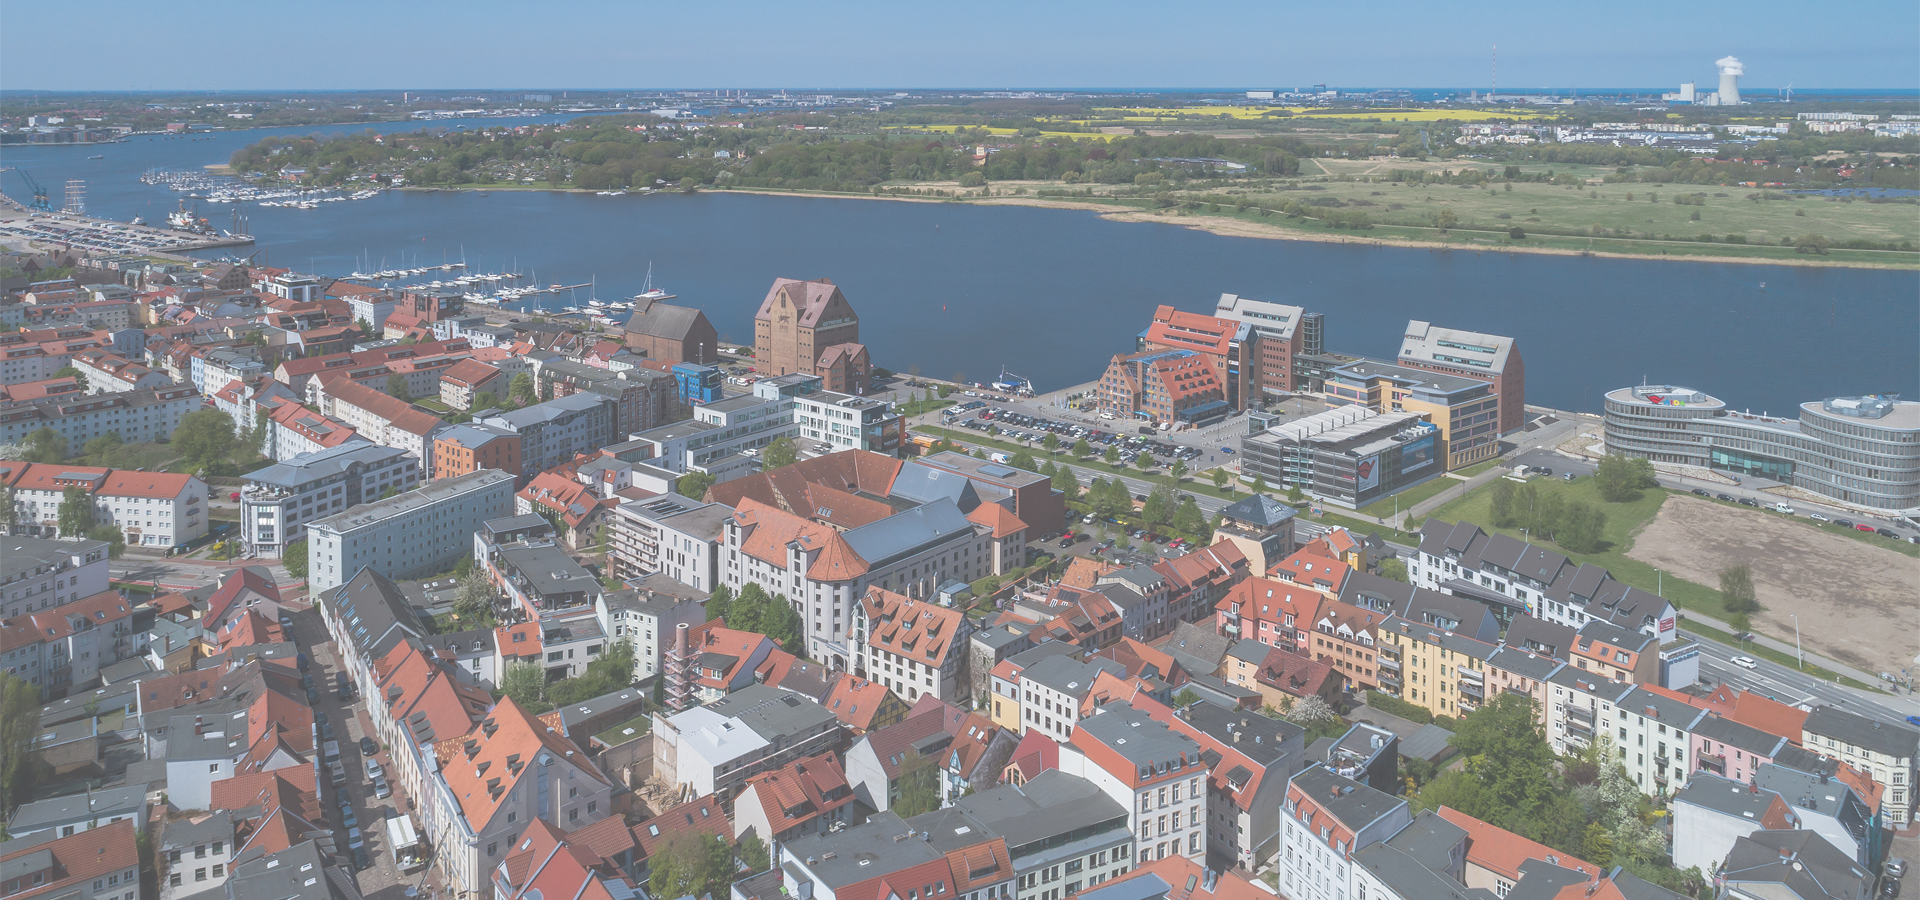 <b>Rostock, Mecklenburg, Mecklenburg-Western Pomerania, Germany</b>